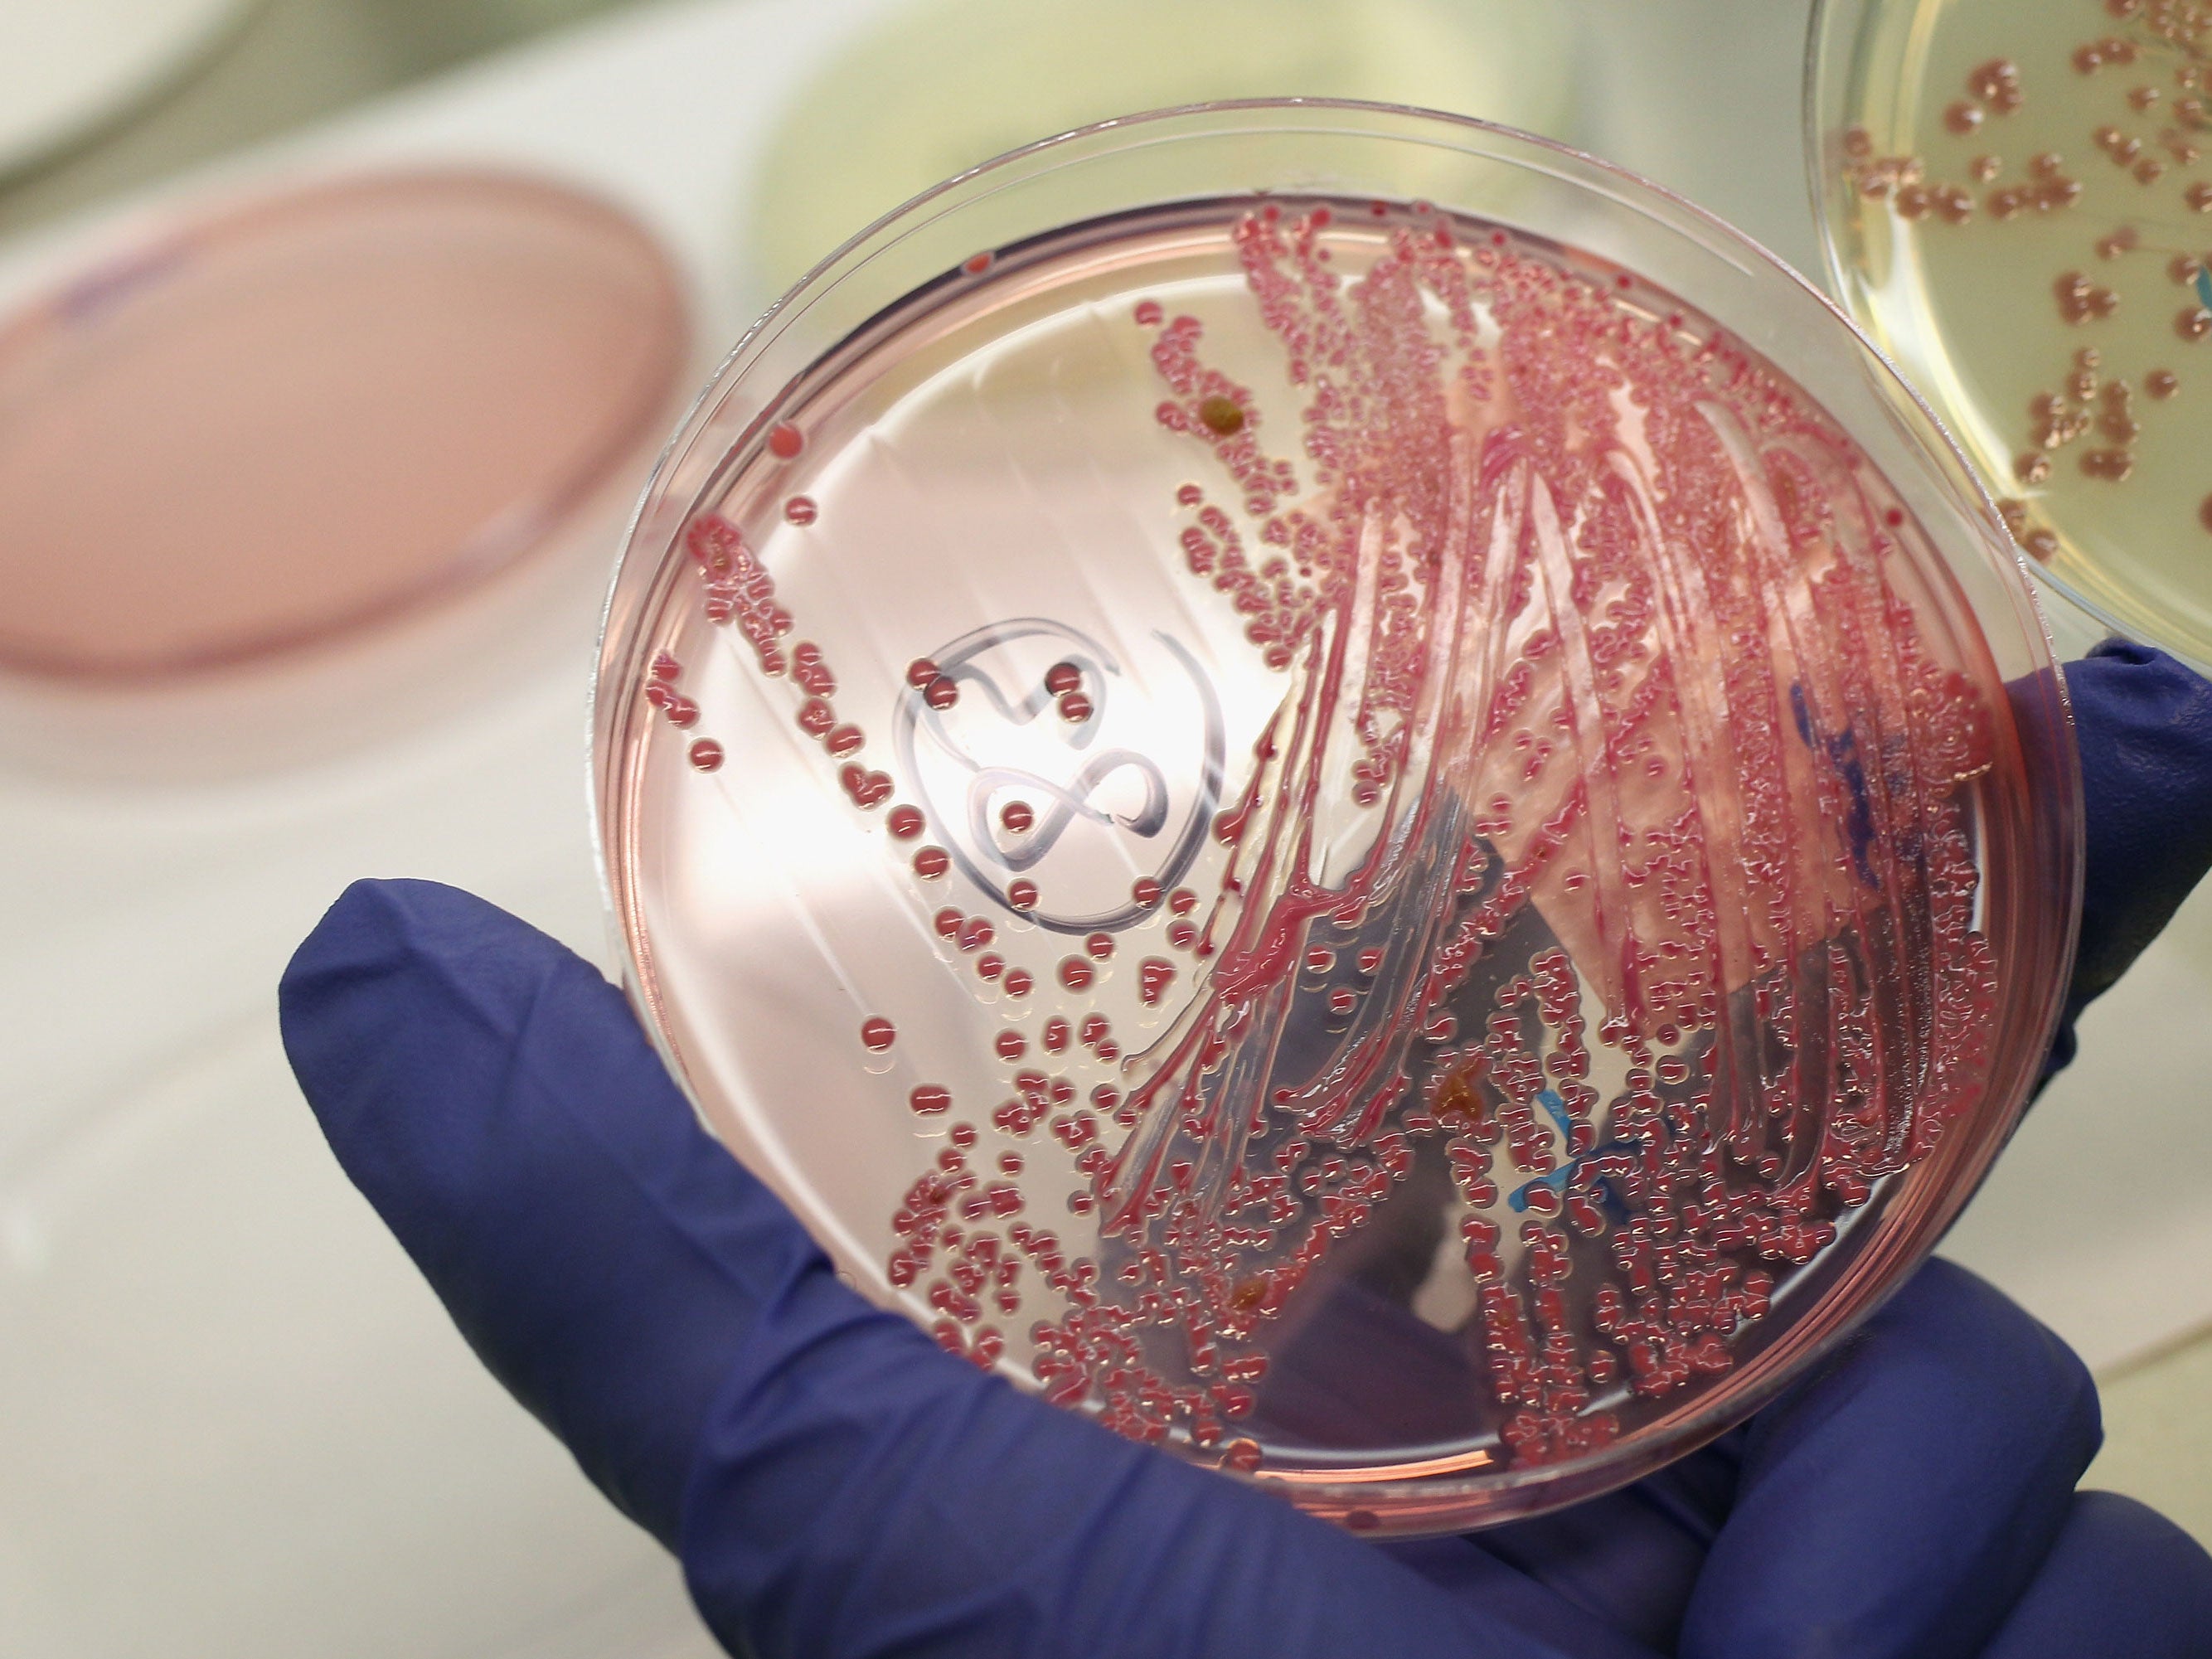 La nueva cepa de estreptococo del grupo A podría ser más propensa a causar infecciones internas graves